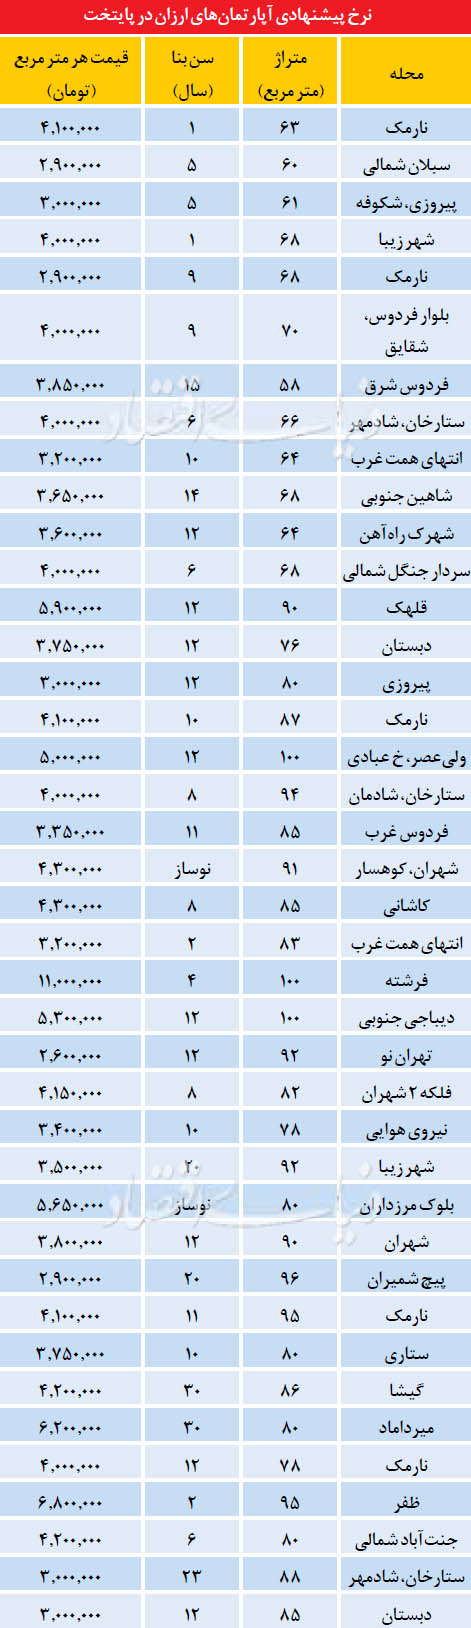 آپارتمان های ارزان در تهران (جدول)